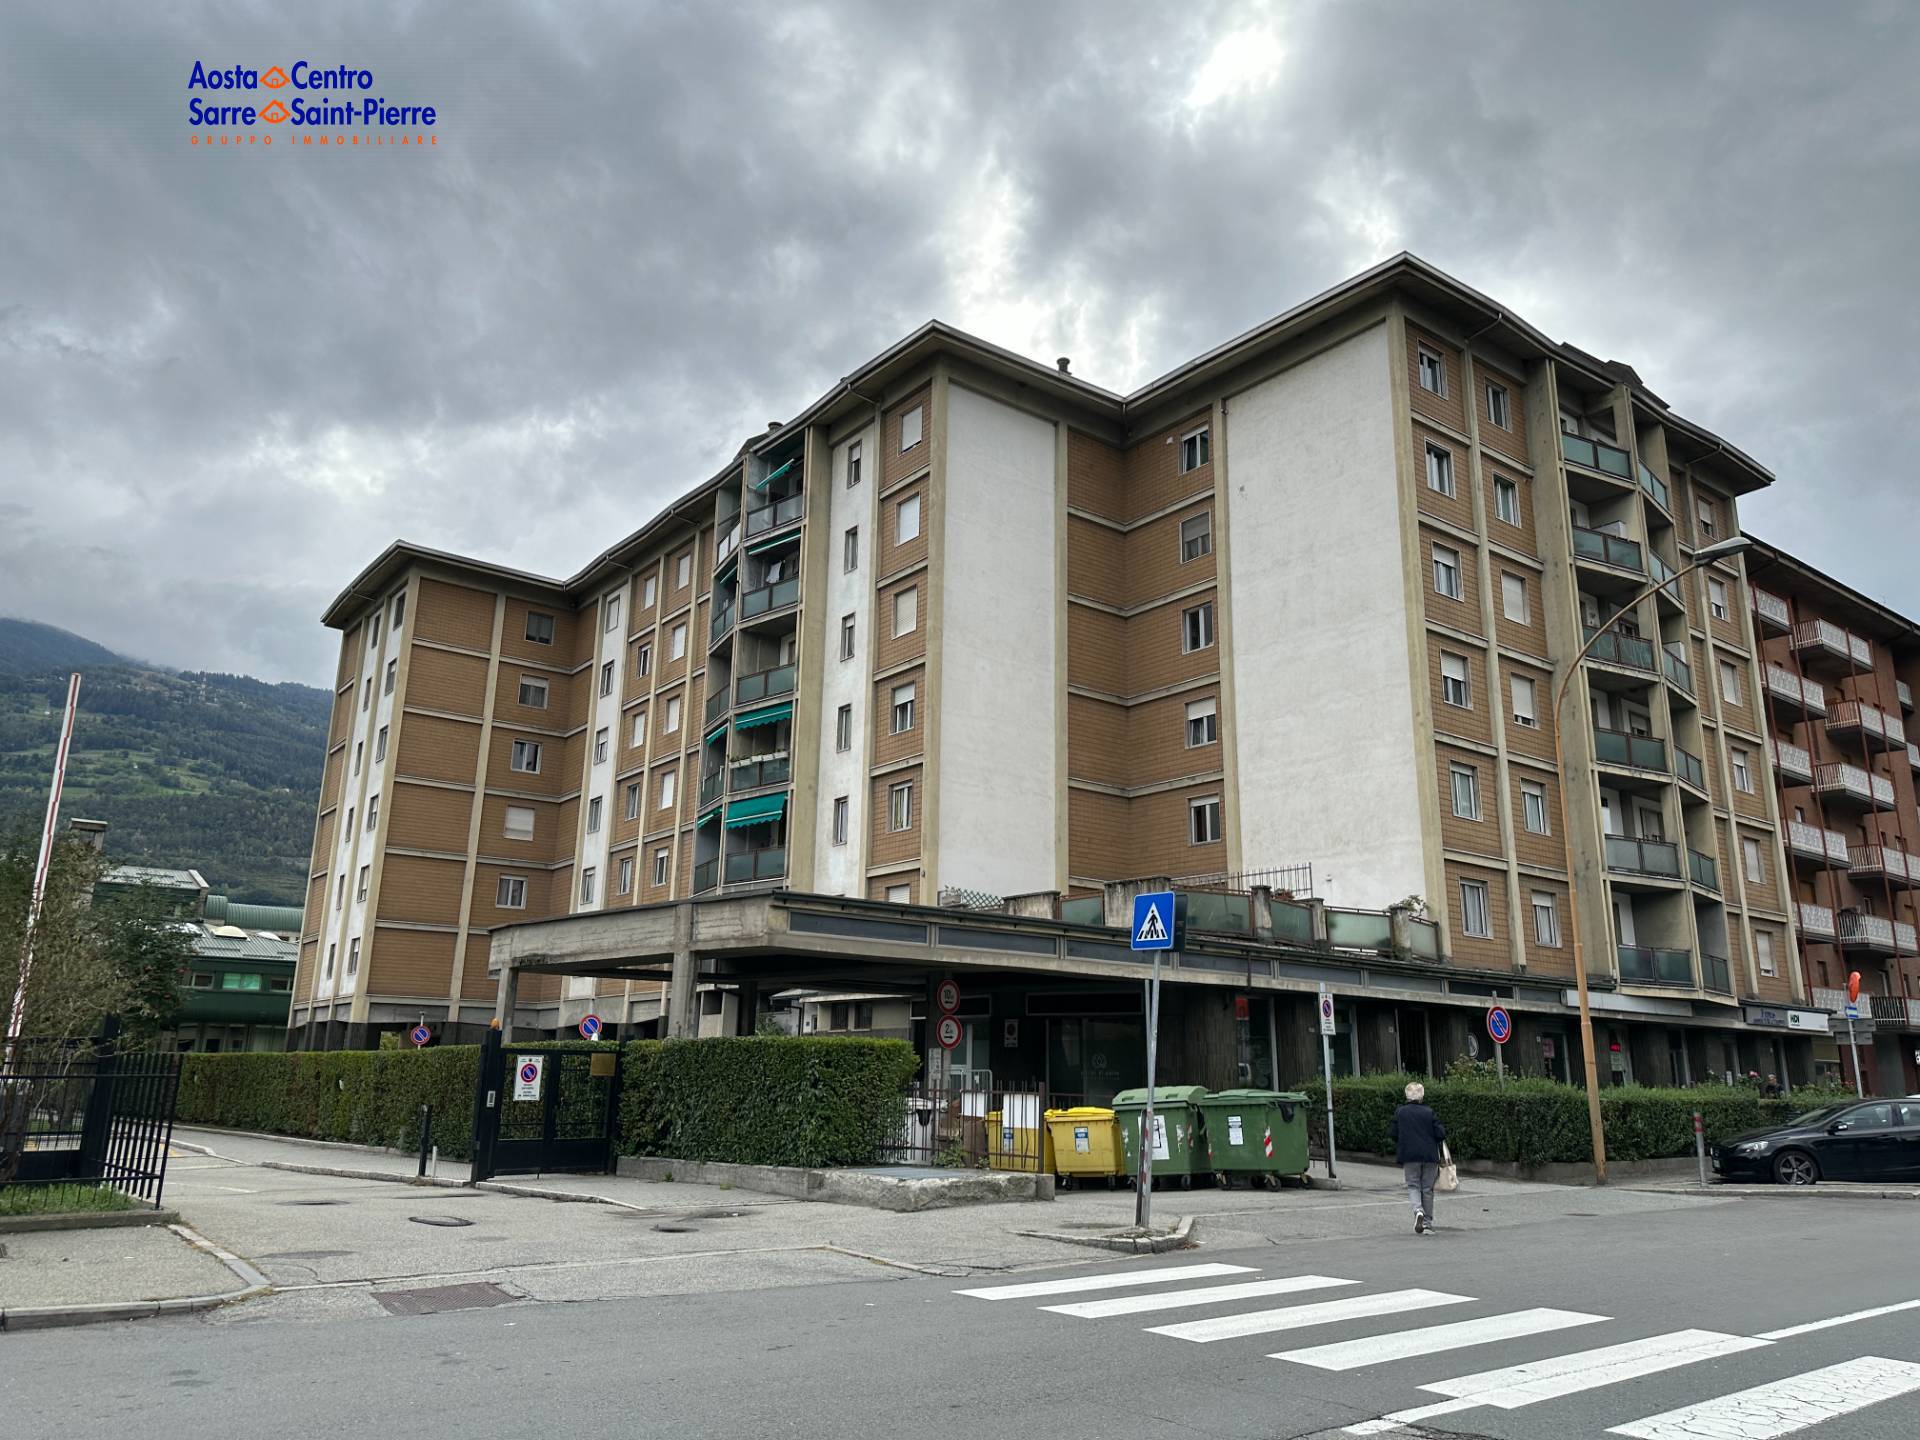 Trilocale da ristrutturare, Aosta centro